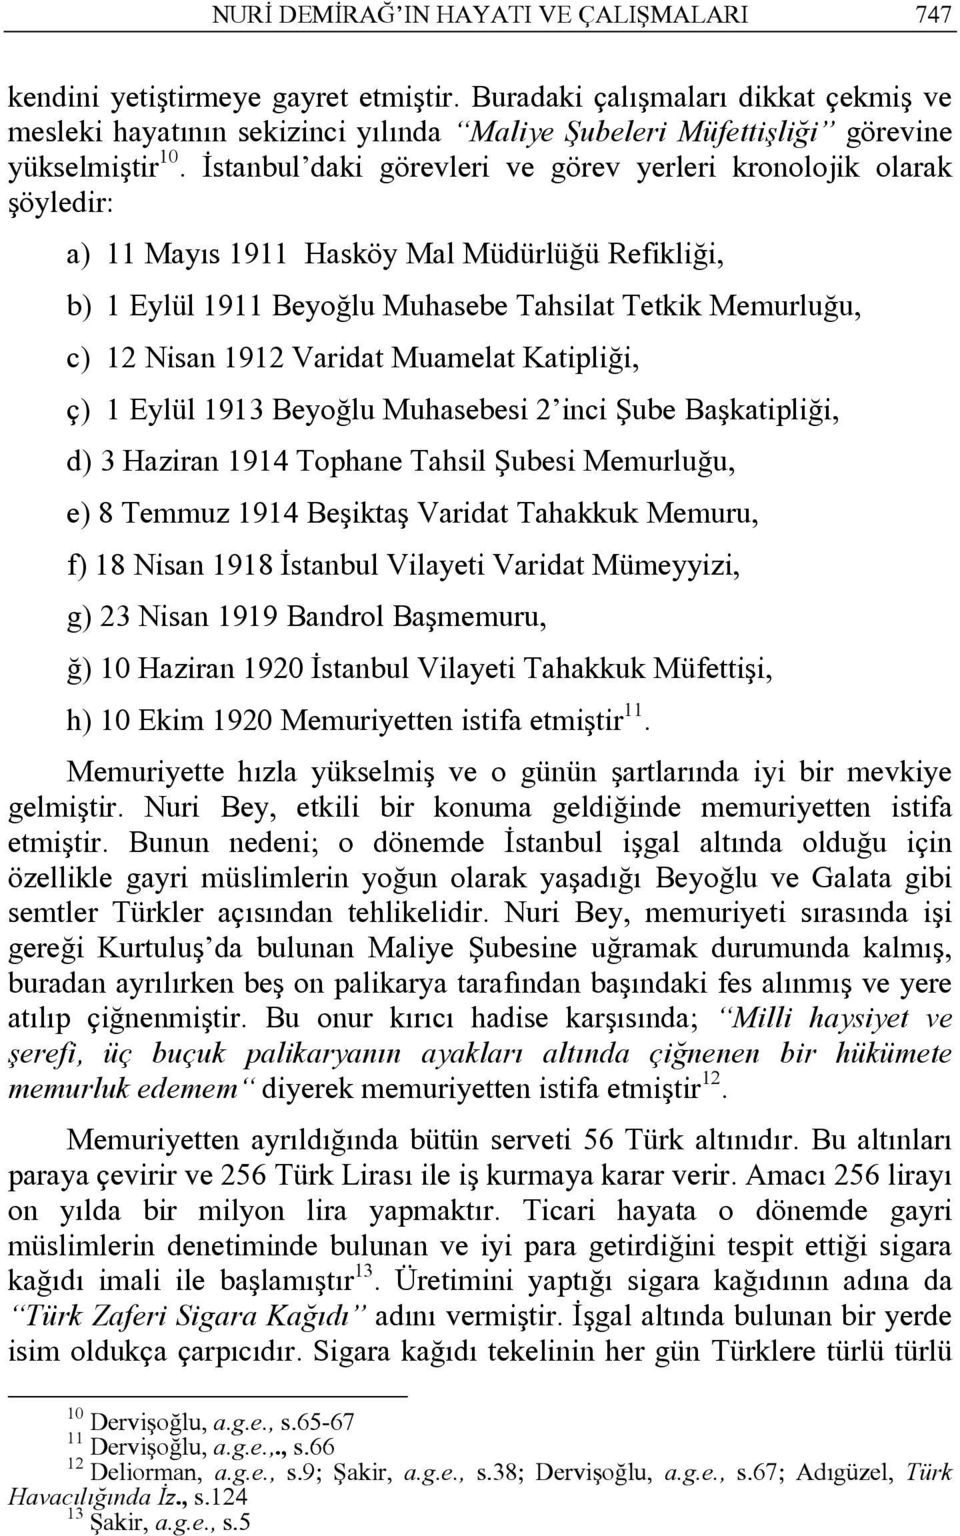 İstanbul daki görevleri ve görev yerleri kronolojik olarak şöyledir: a) 11 Mayıs 1911 Hasköy Mal Müdürlüğü Refikliği, b) 1 Eylül 1911 Beyoğlu Muhasebe Tahsilat Tetkik Memurluğu, c) 12 Nisan 1912